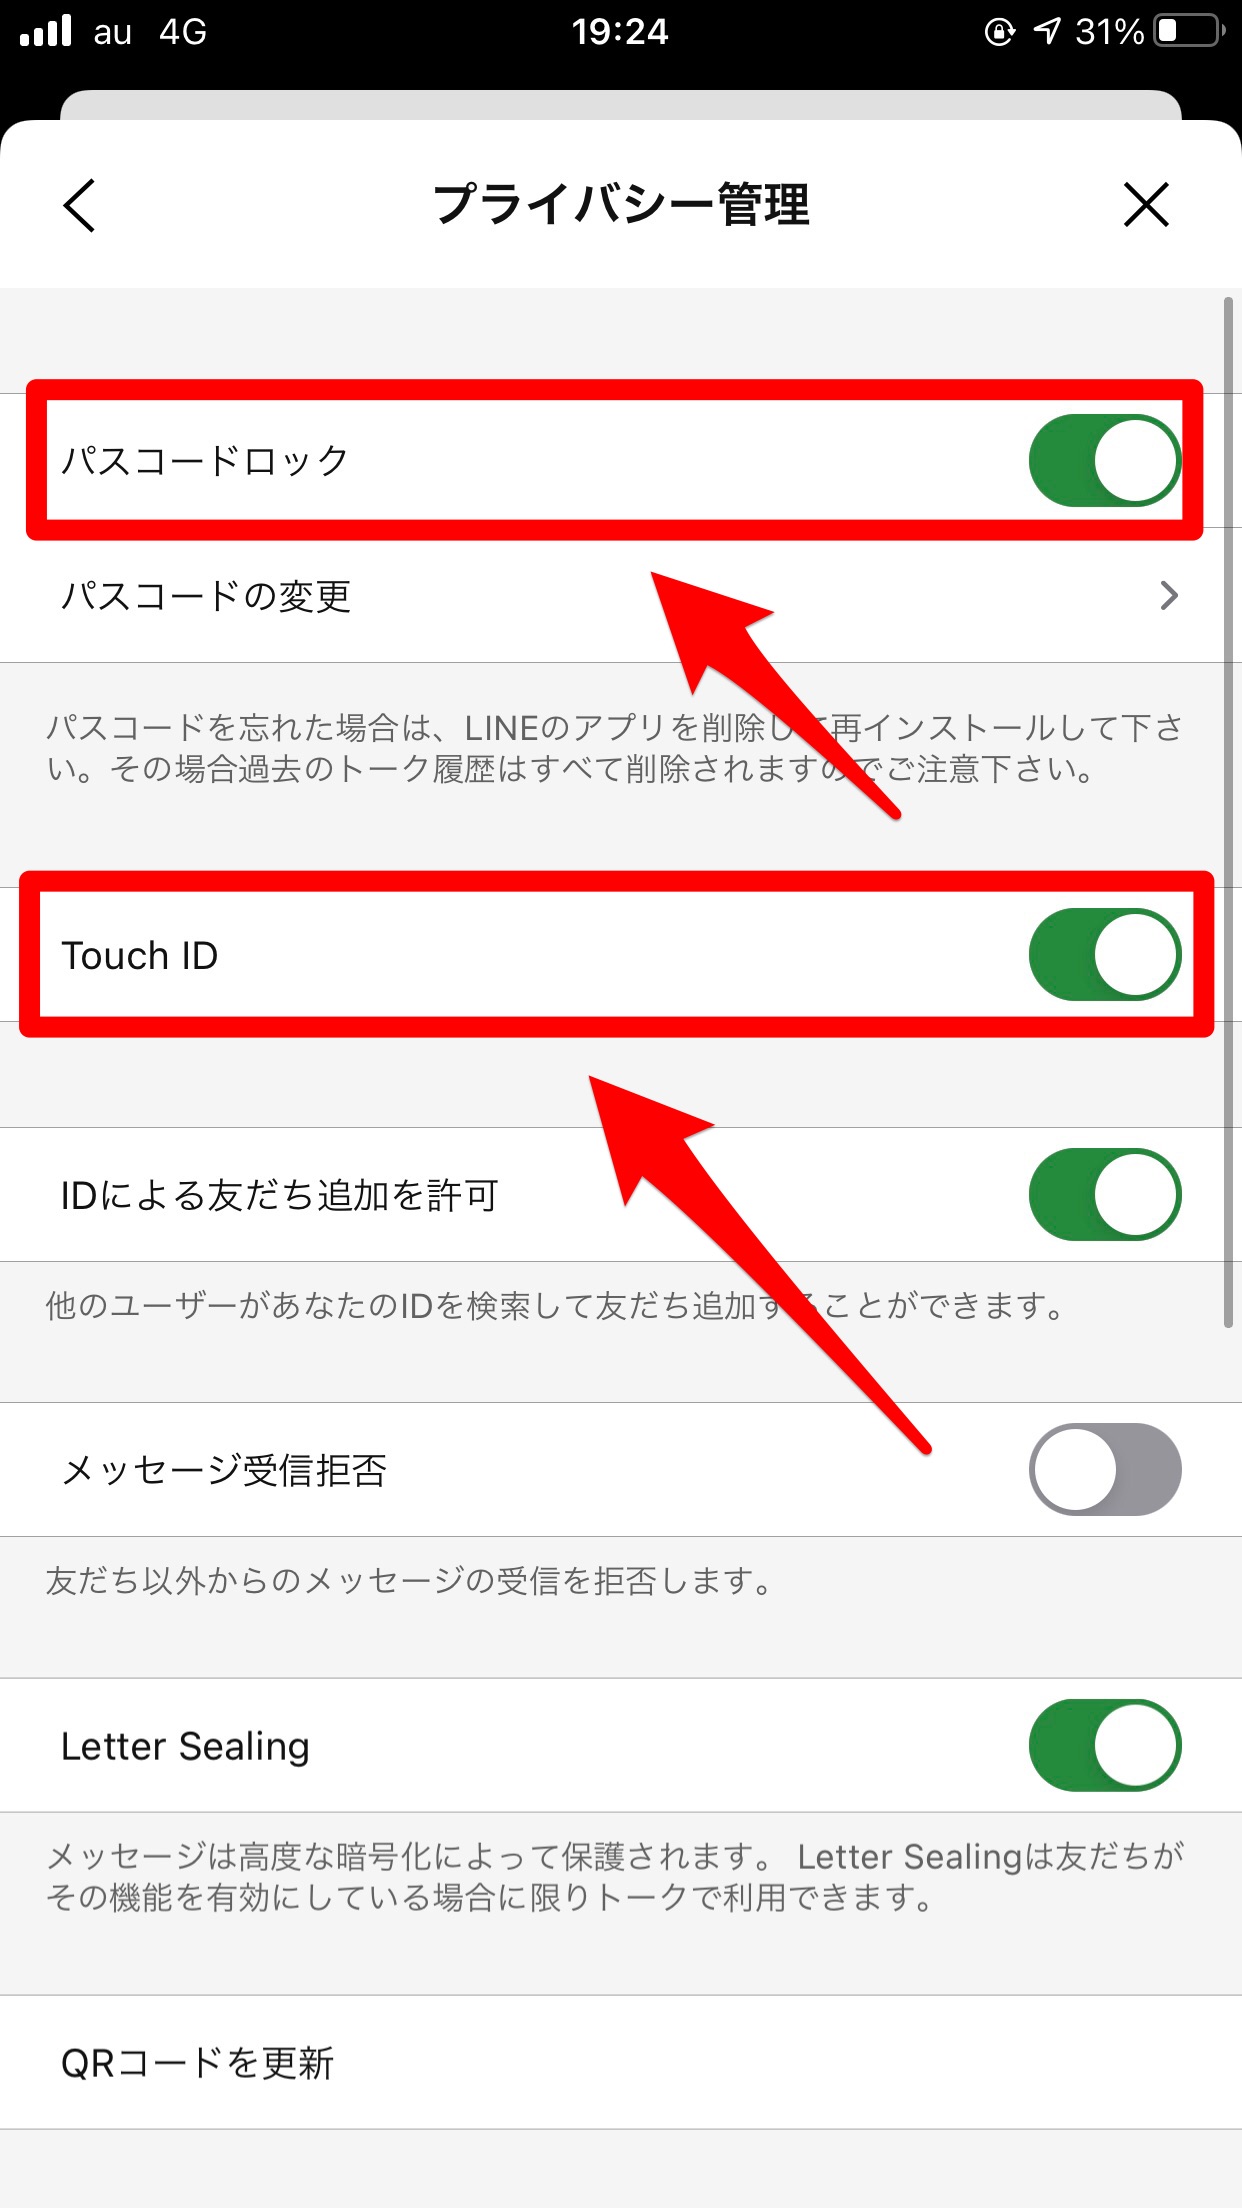 「パスコードロック」と「Touch ID」の設定をONにする